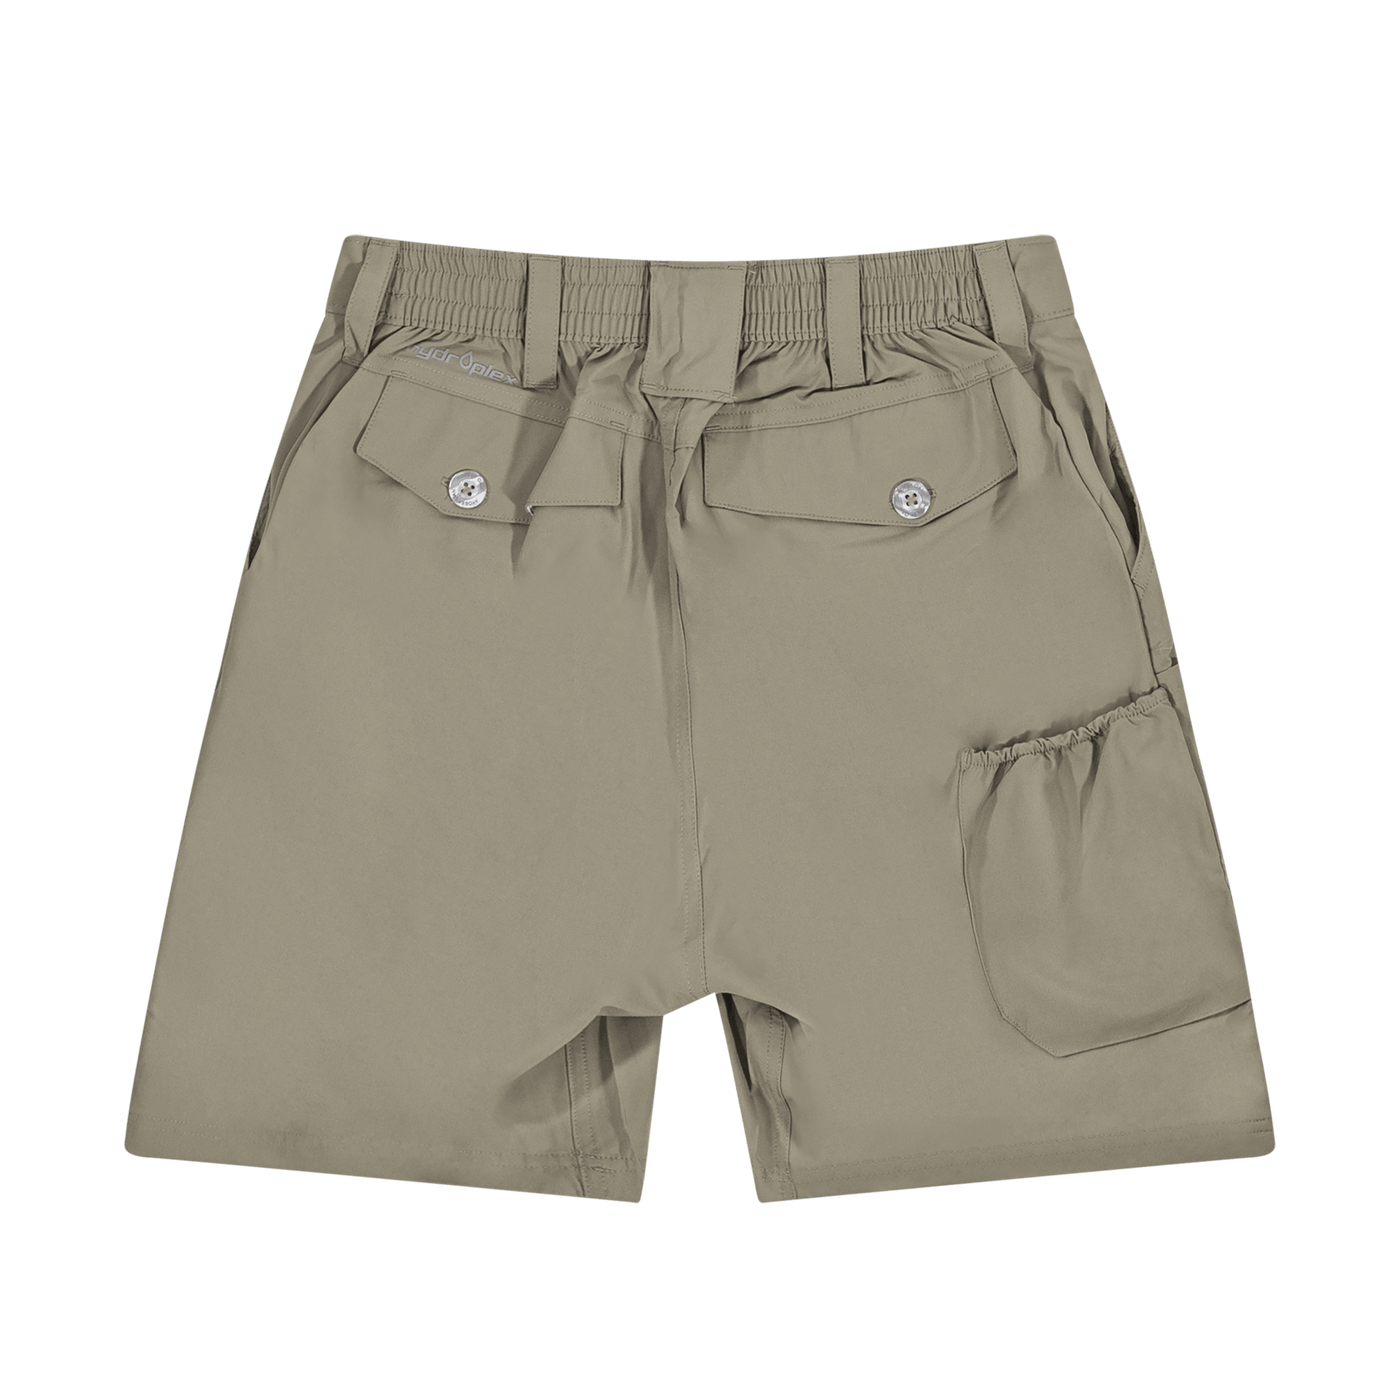 Mossy Oak Men's Fishing Board Shorts – The Mossy Oak Store